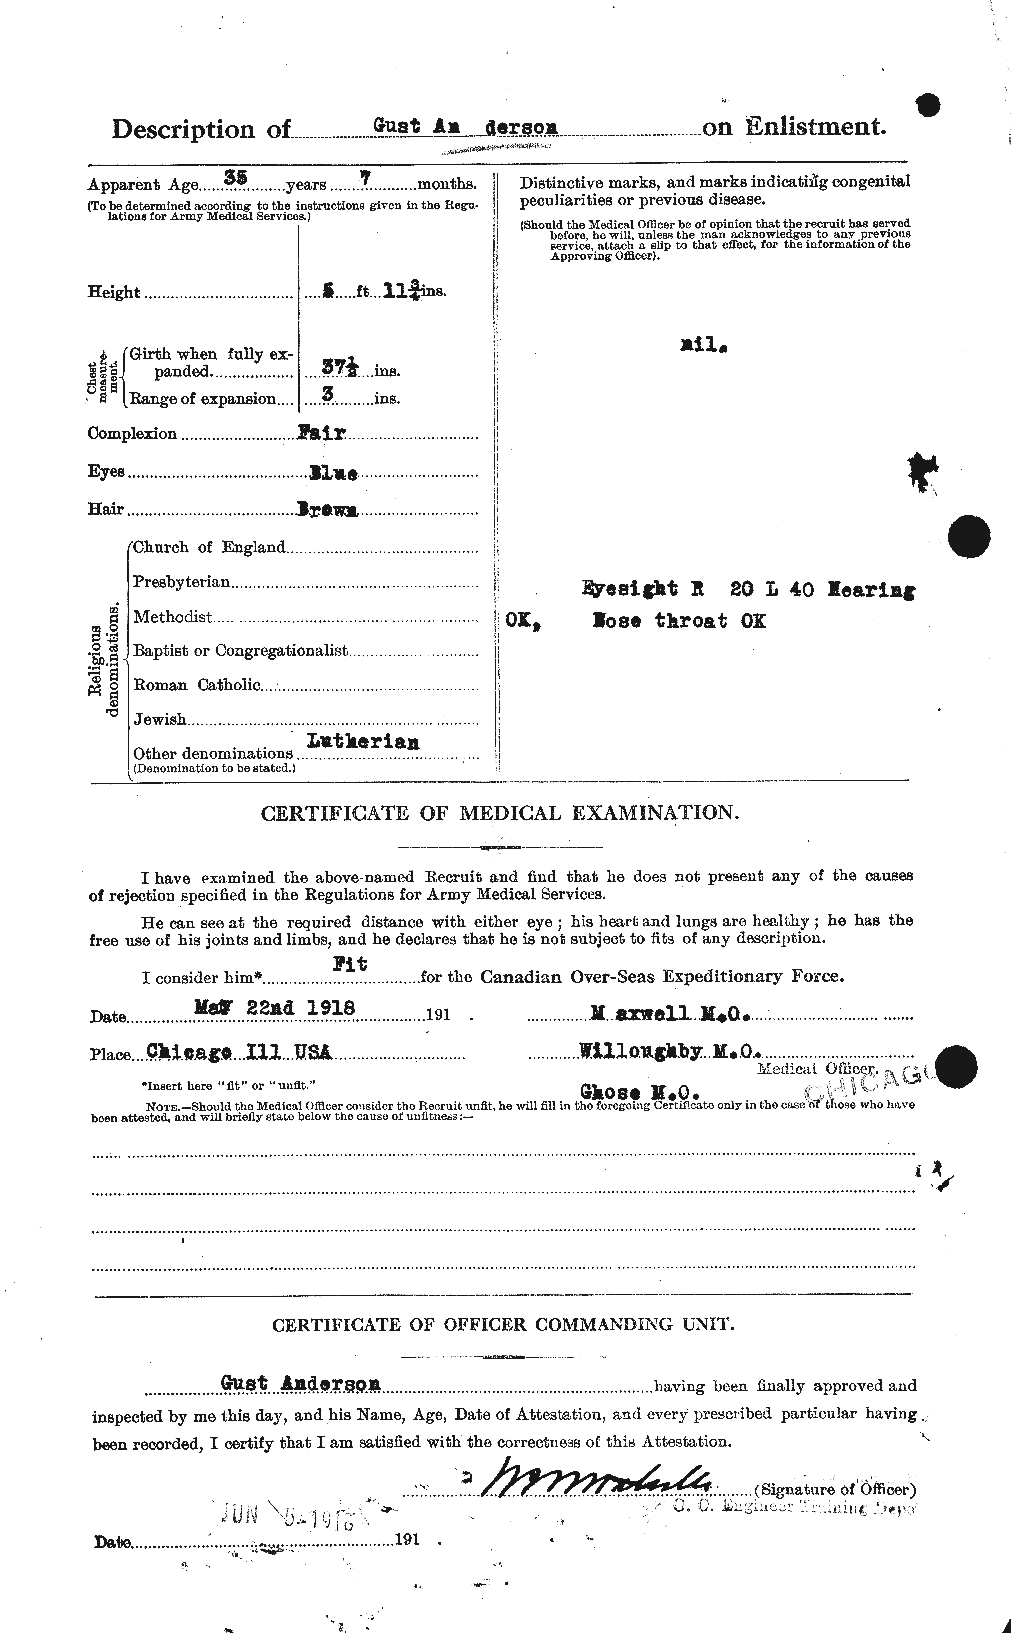 Dossiers du Personnel de la Première Guerre mondiale - CEC 209652b